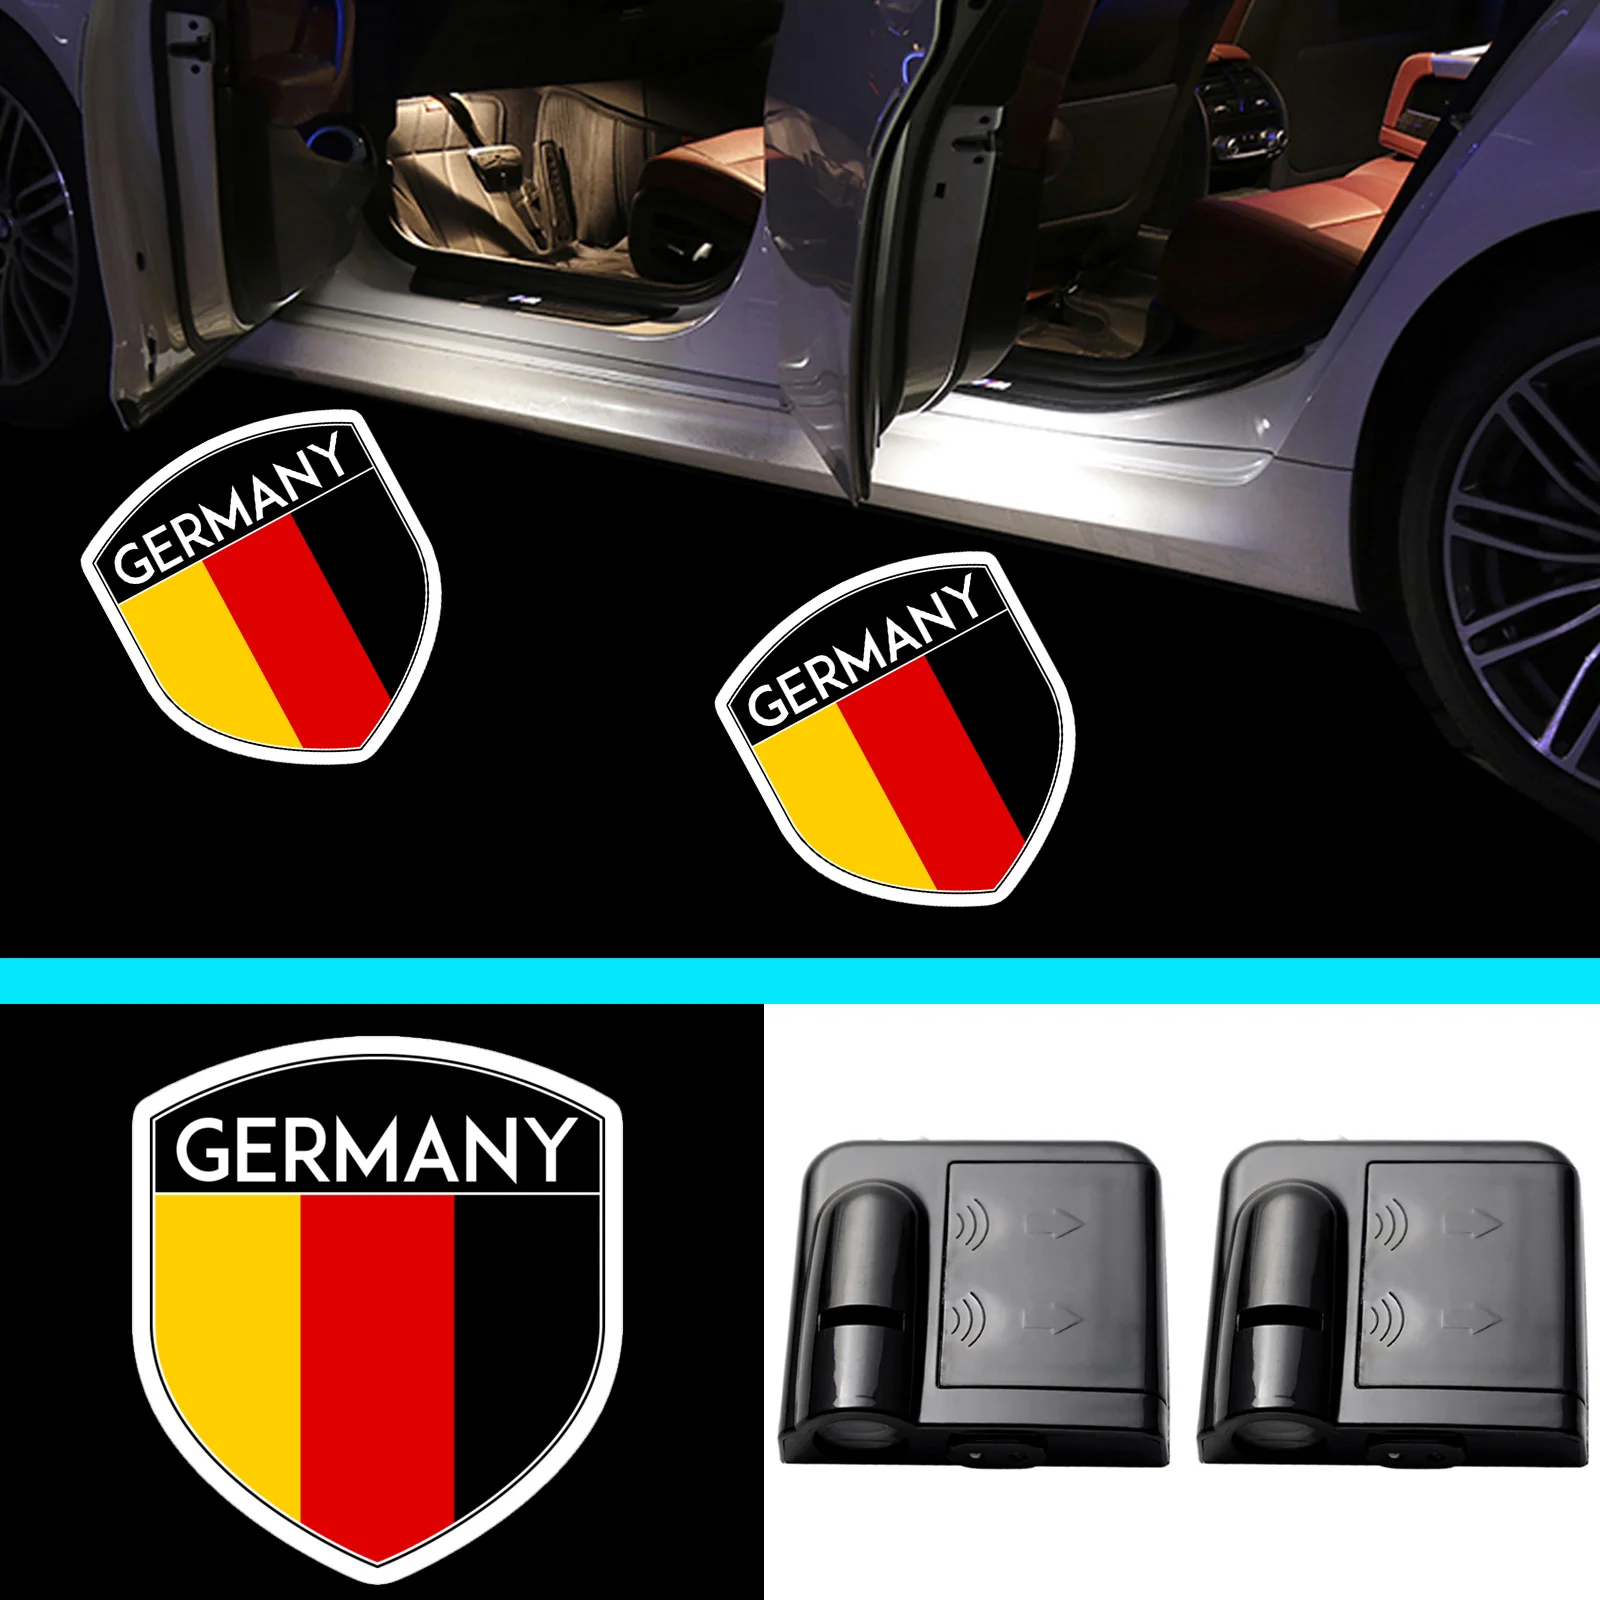 

Автомобиль с немецким и государственным флагом Германии, 2 шт., беспроводной инфракрасный датчик, светодиодный проектор с призраком и тенью